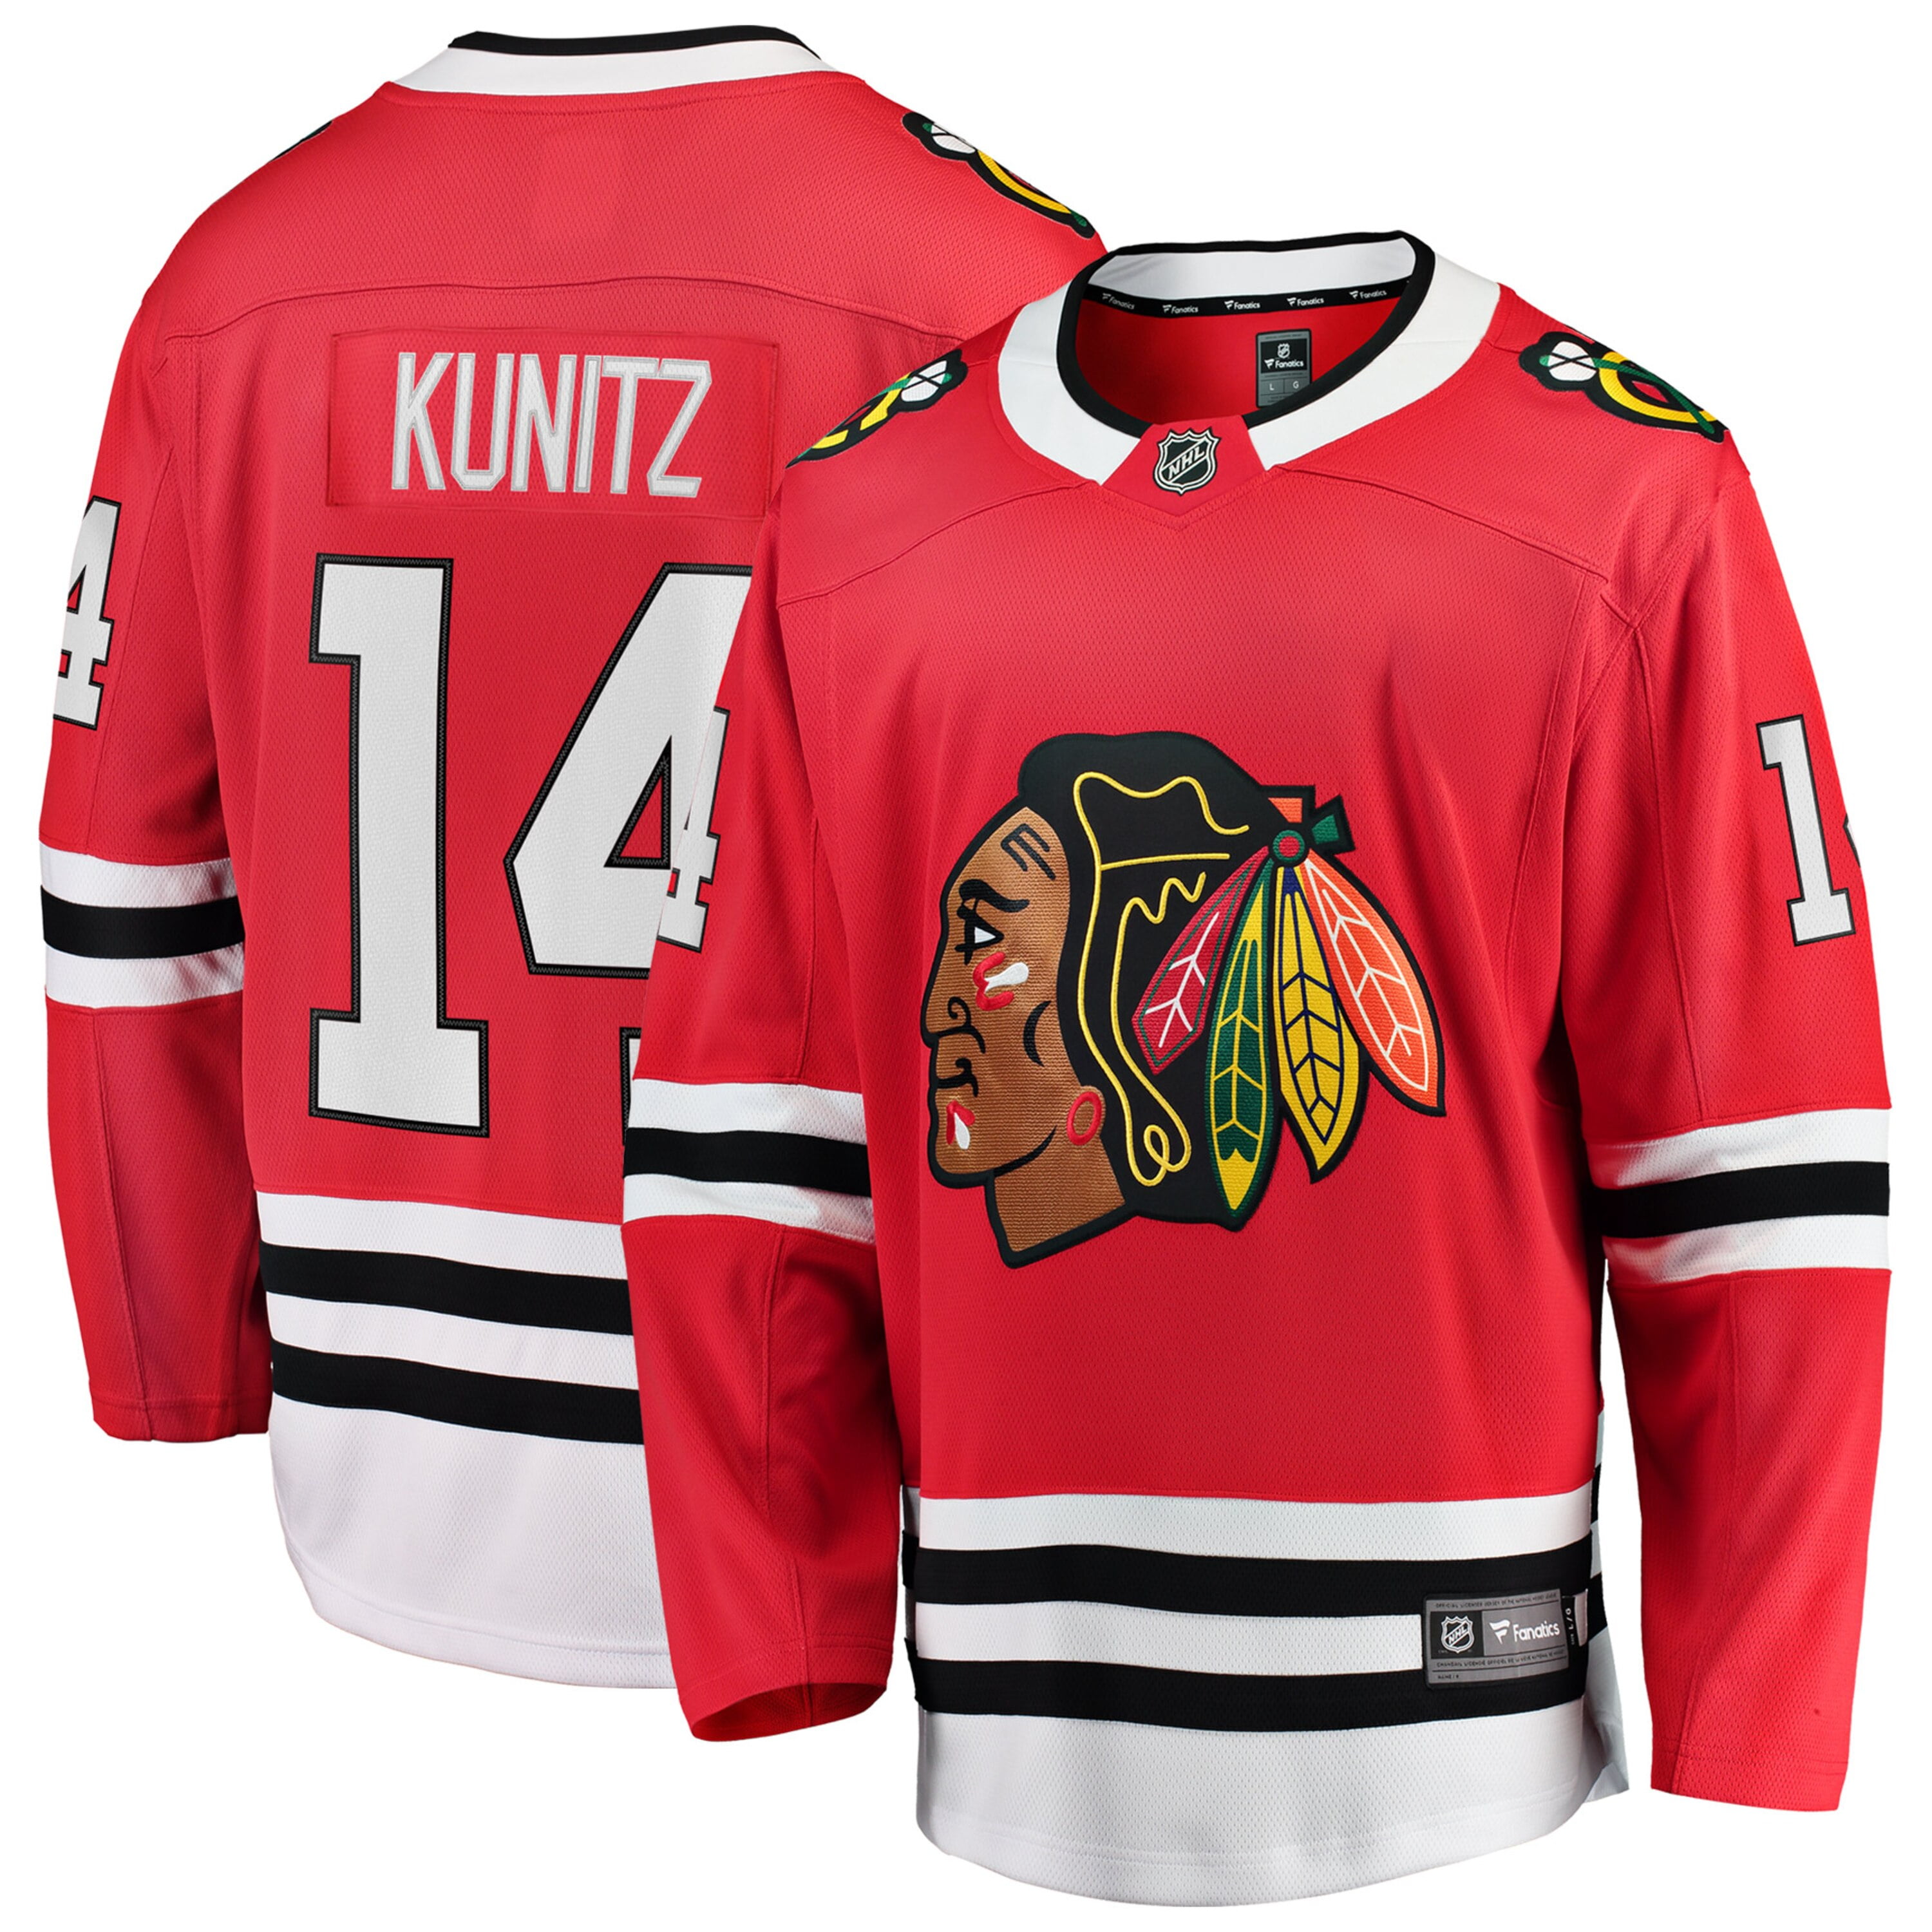 Chris Kunitz Chicago Blackhawks NHL 